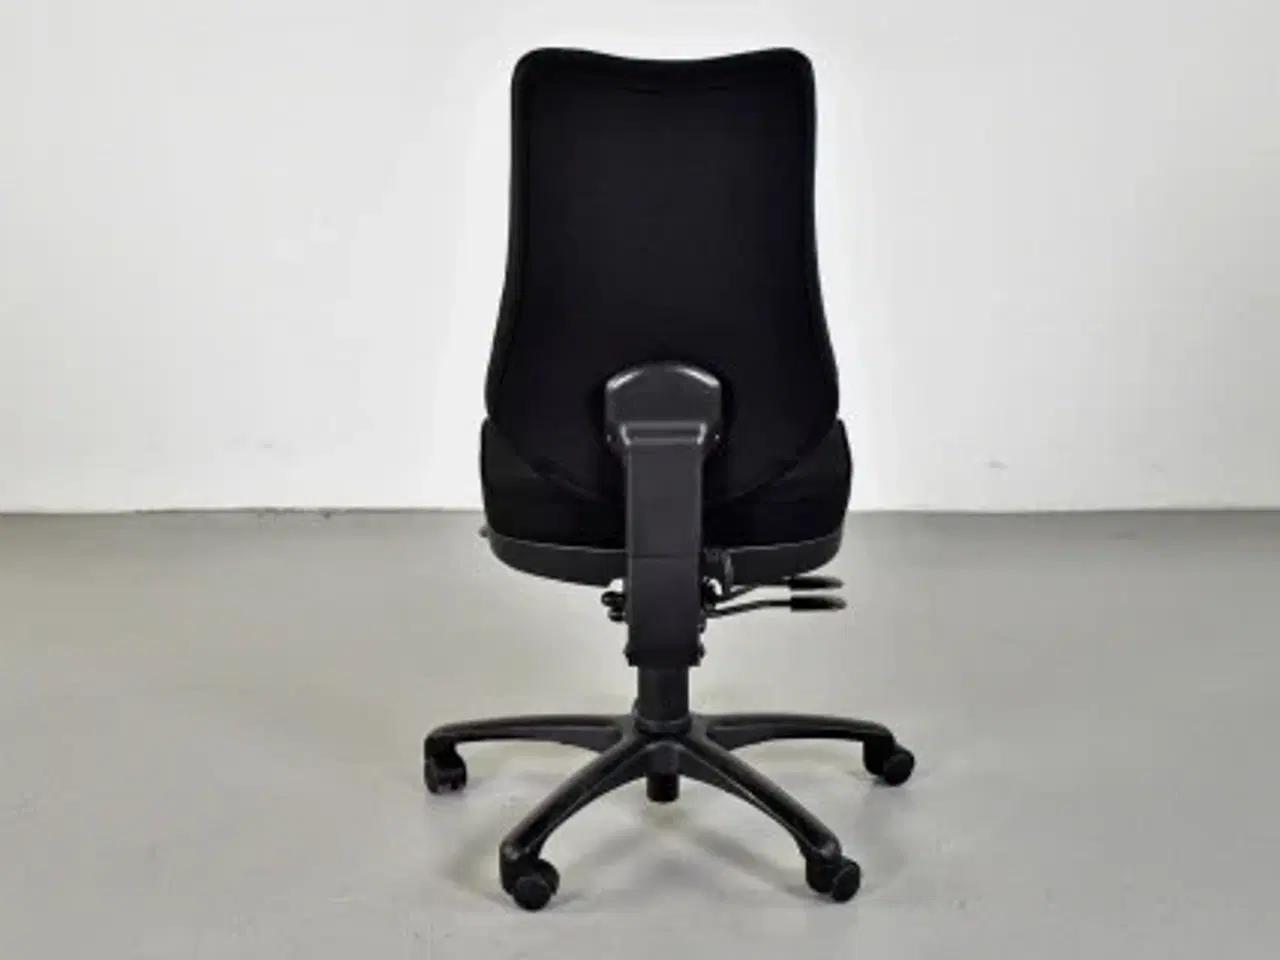 Billede 3 - Rbm model 800 kontorstol med høj ryg og nyt sort polster